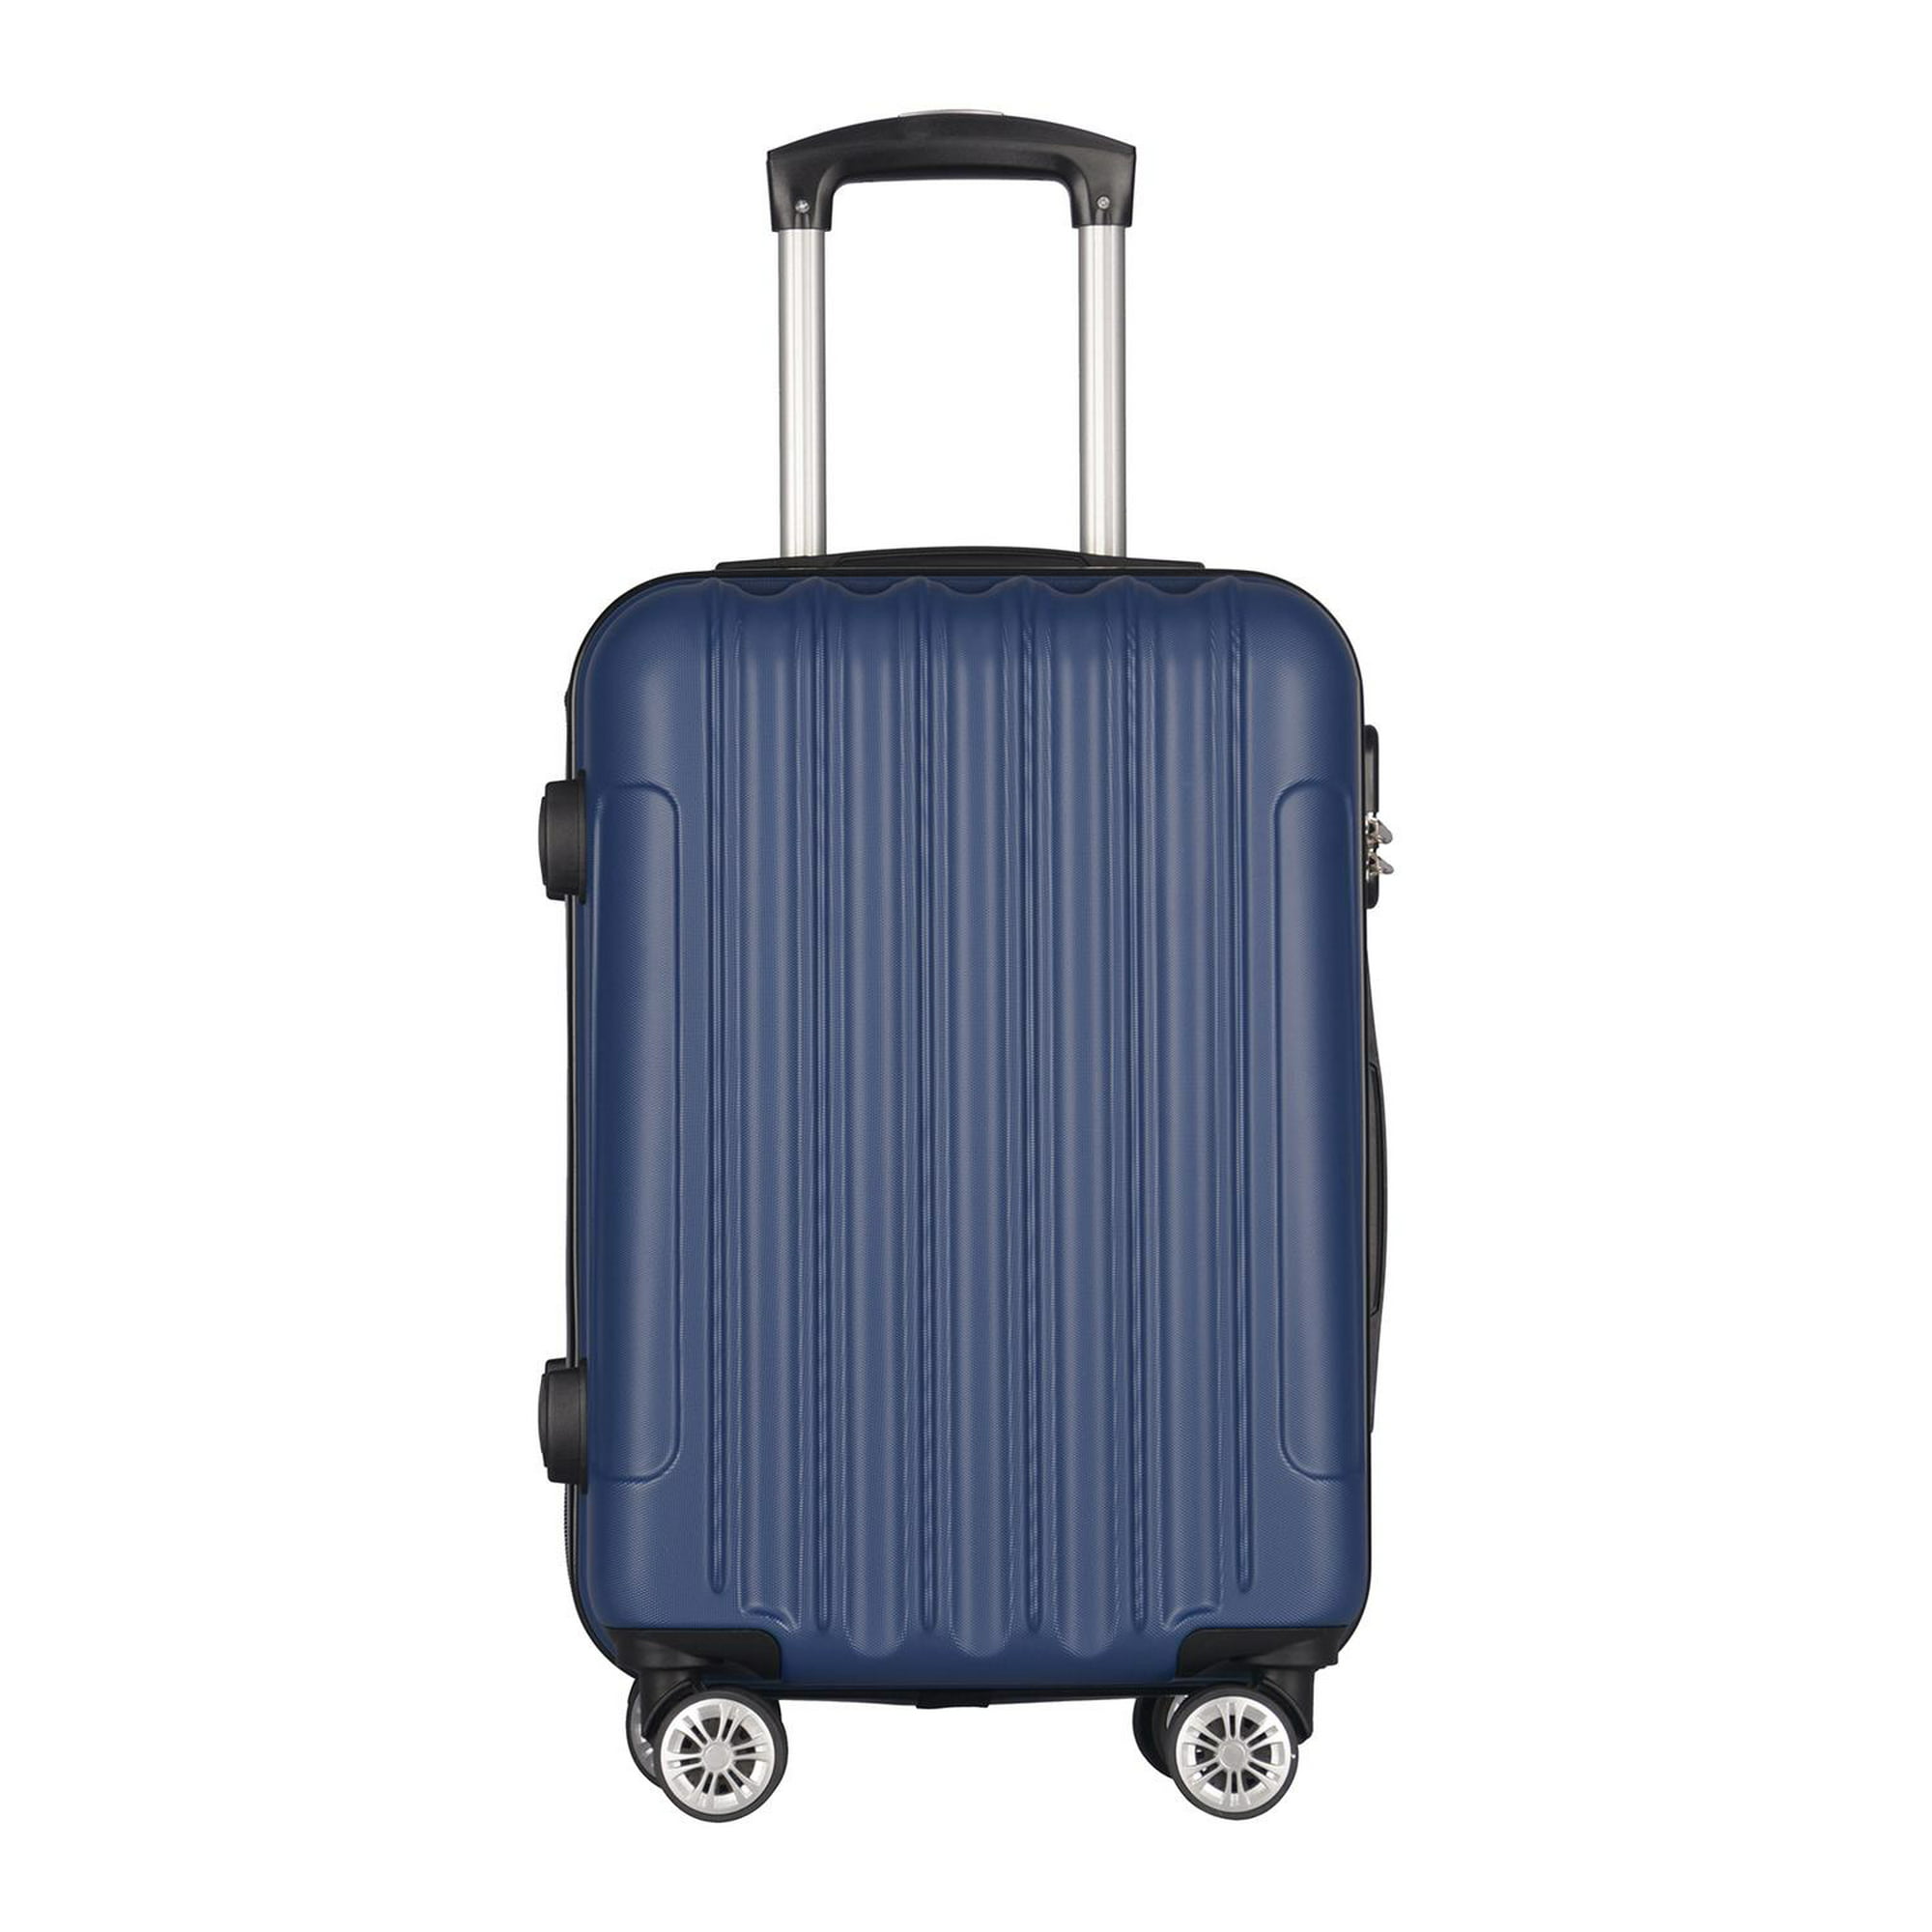 Cuál es el peso y tamaño máximo para el equipaje de bodega? – Centro de  ayuda avianca